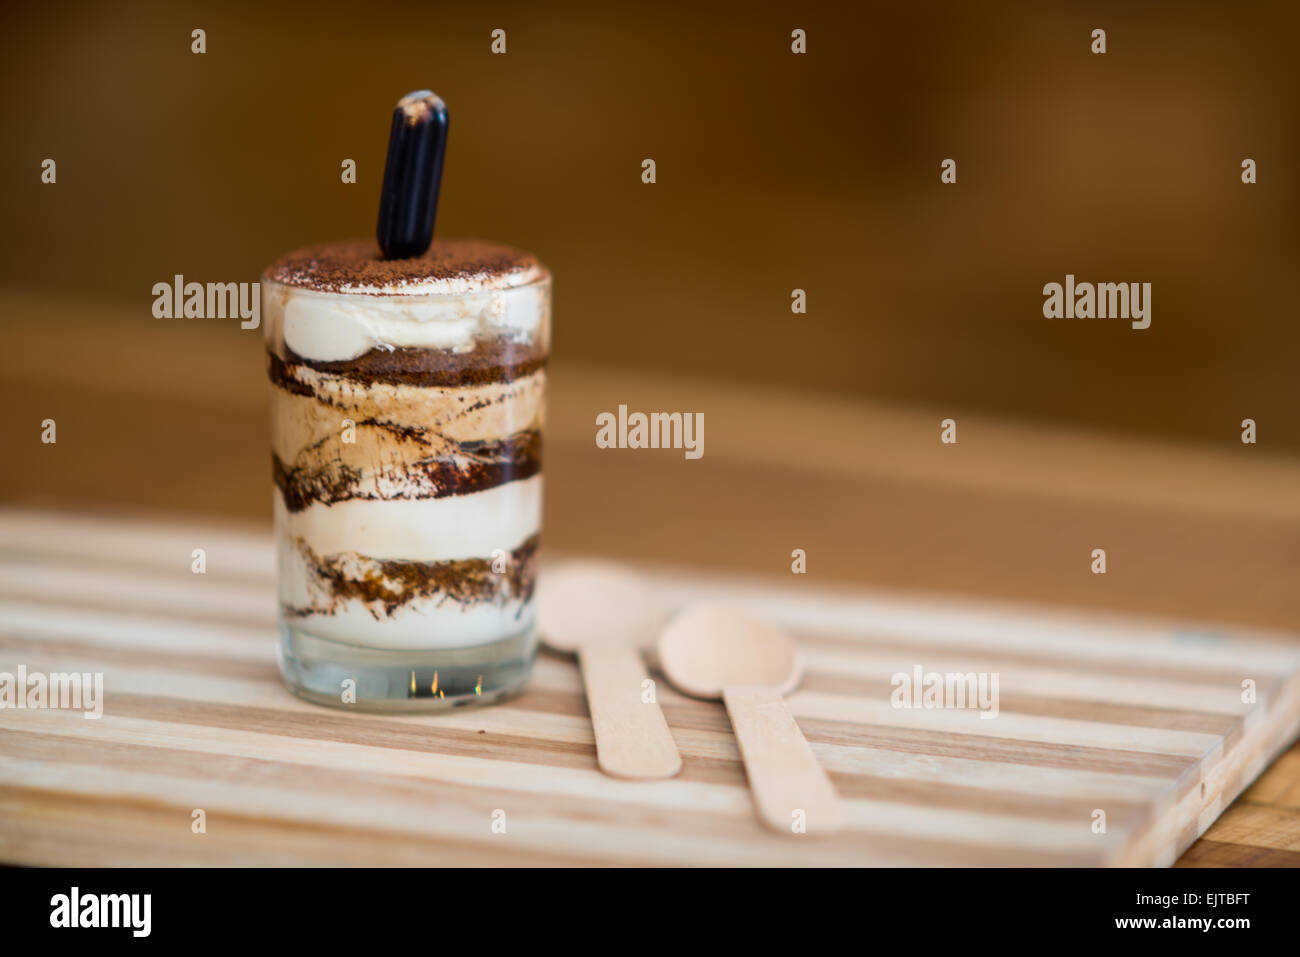 Il tiramisù è un famoso caffè aromatizzato con dessert italiano. Foto Stock